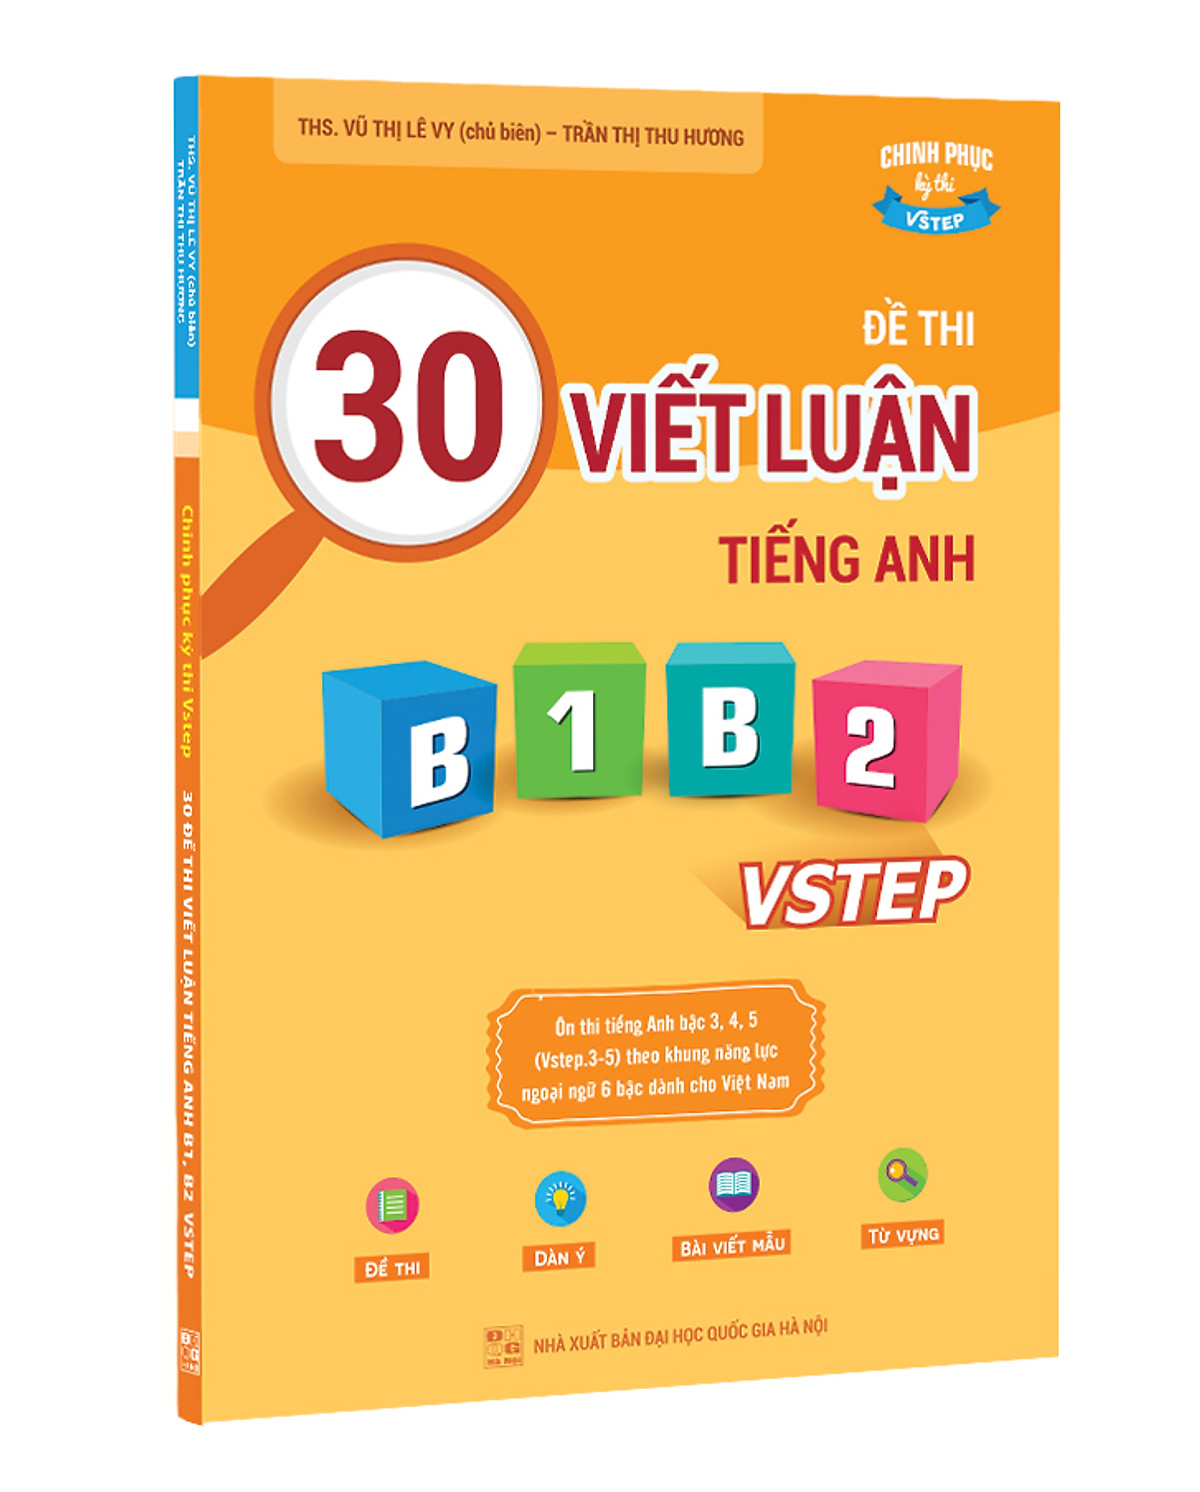 Sách 30 đề thi Viết luận tiếng Anh B1, B2 Vstep - Ôn thi tiếng Anh bậc 3, 4, 5 theo khung năng lực ngoại ngữ 6 bậc Việt Nam